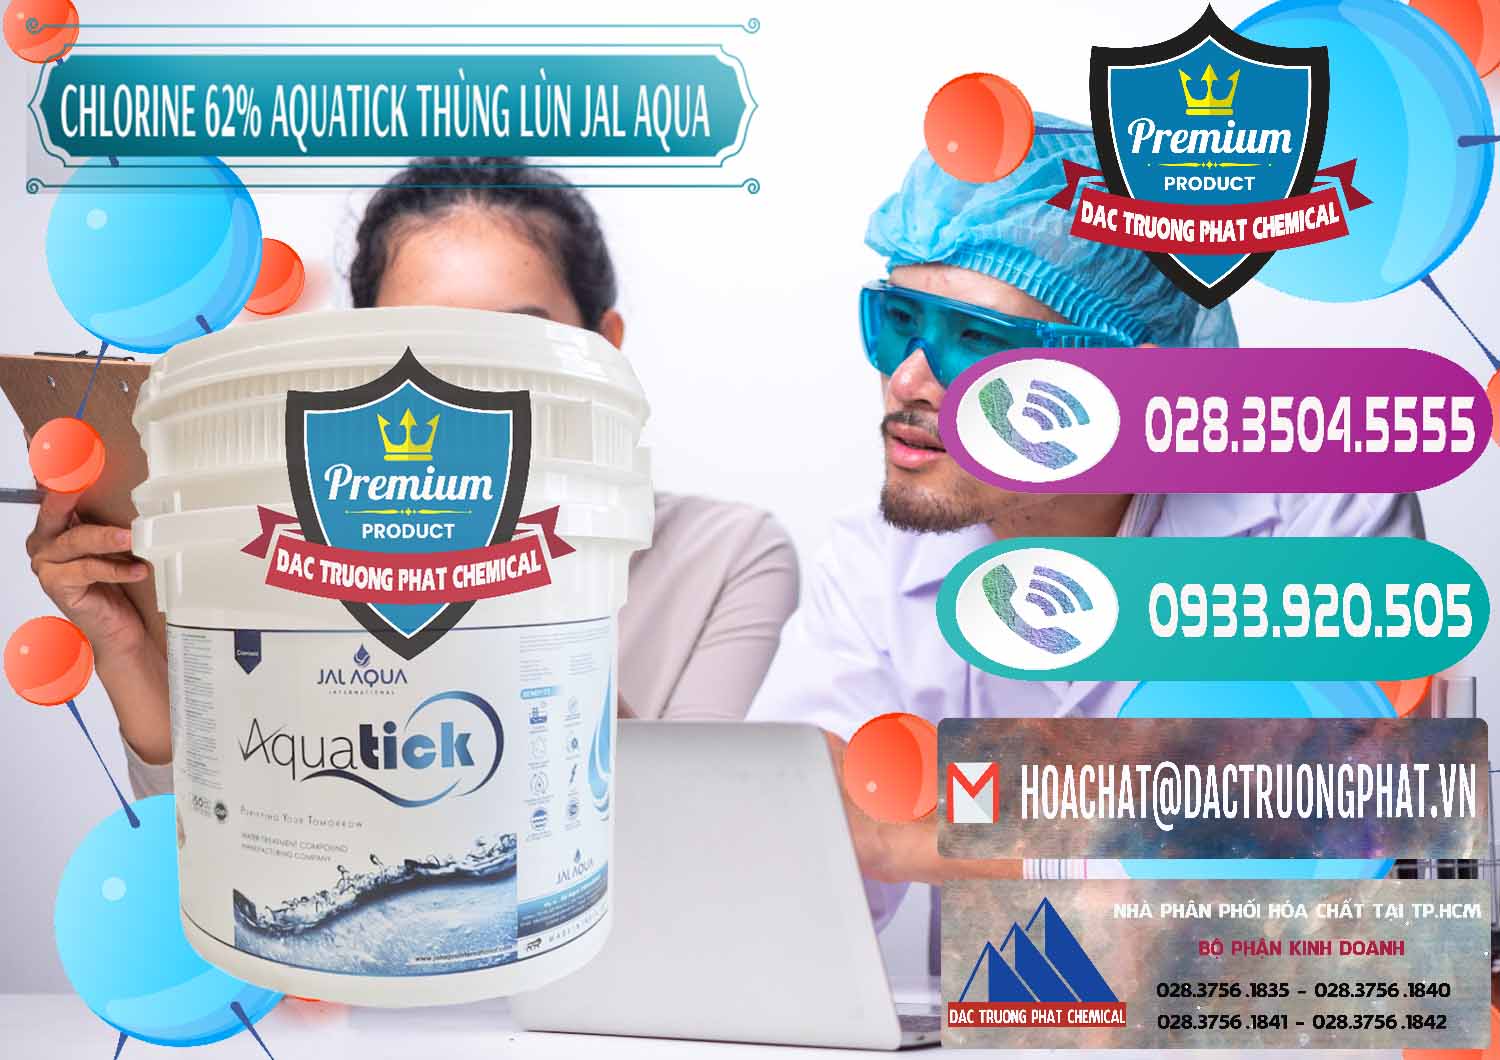 Công ty chuyên cung cấp _ bán Chlorine – Clorin 62% Aquatick Thùng Lùn Jal Aqua Ấn Độ India - 0238 - Nhà phân phối và cung cấp hóa chất tại TP.HCM - hoachatxulynuoc.com